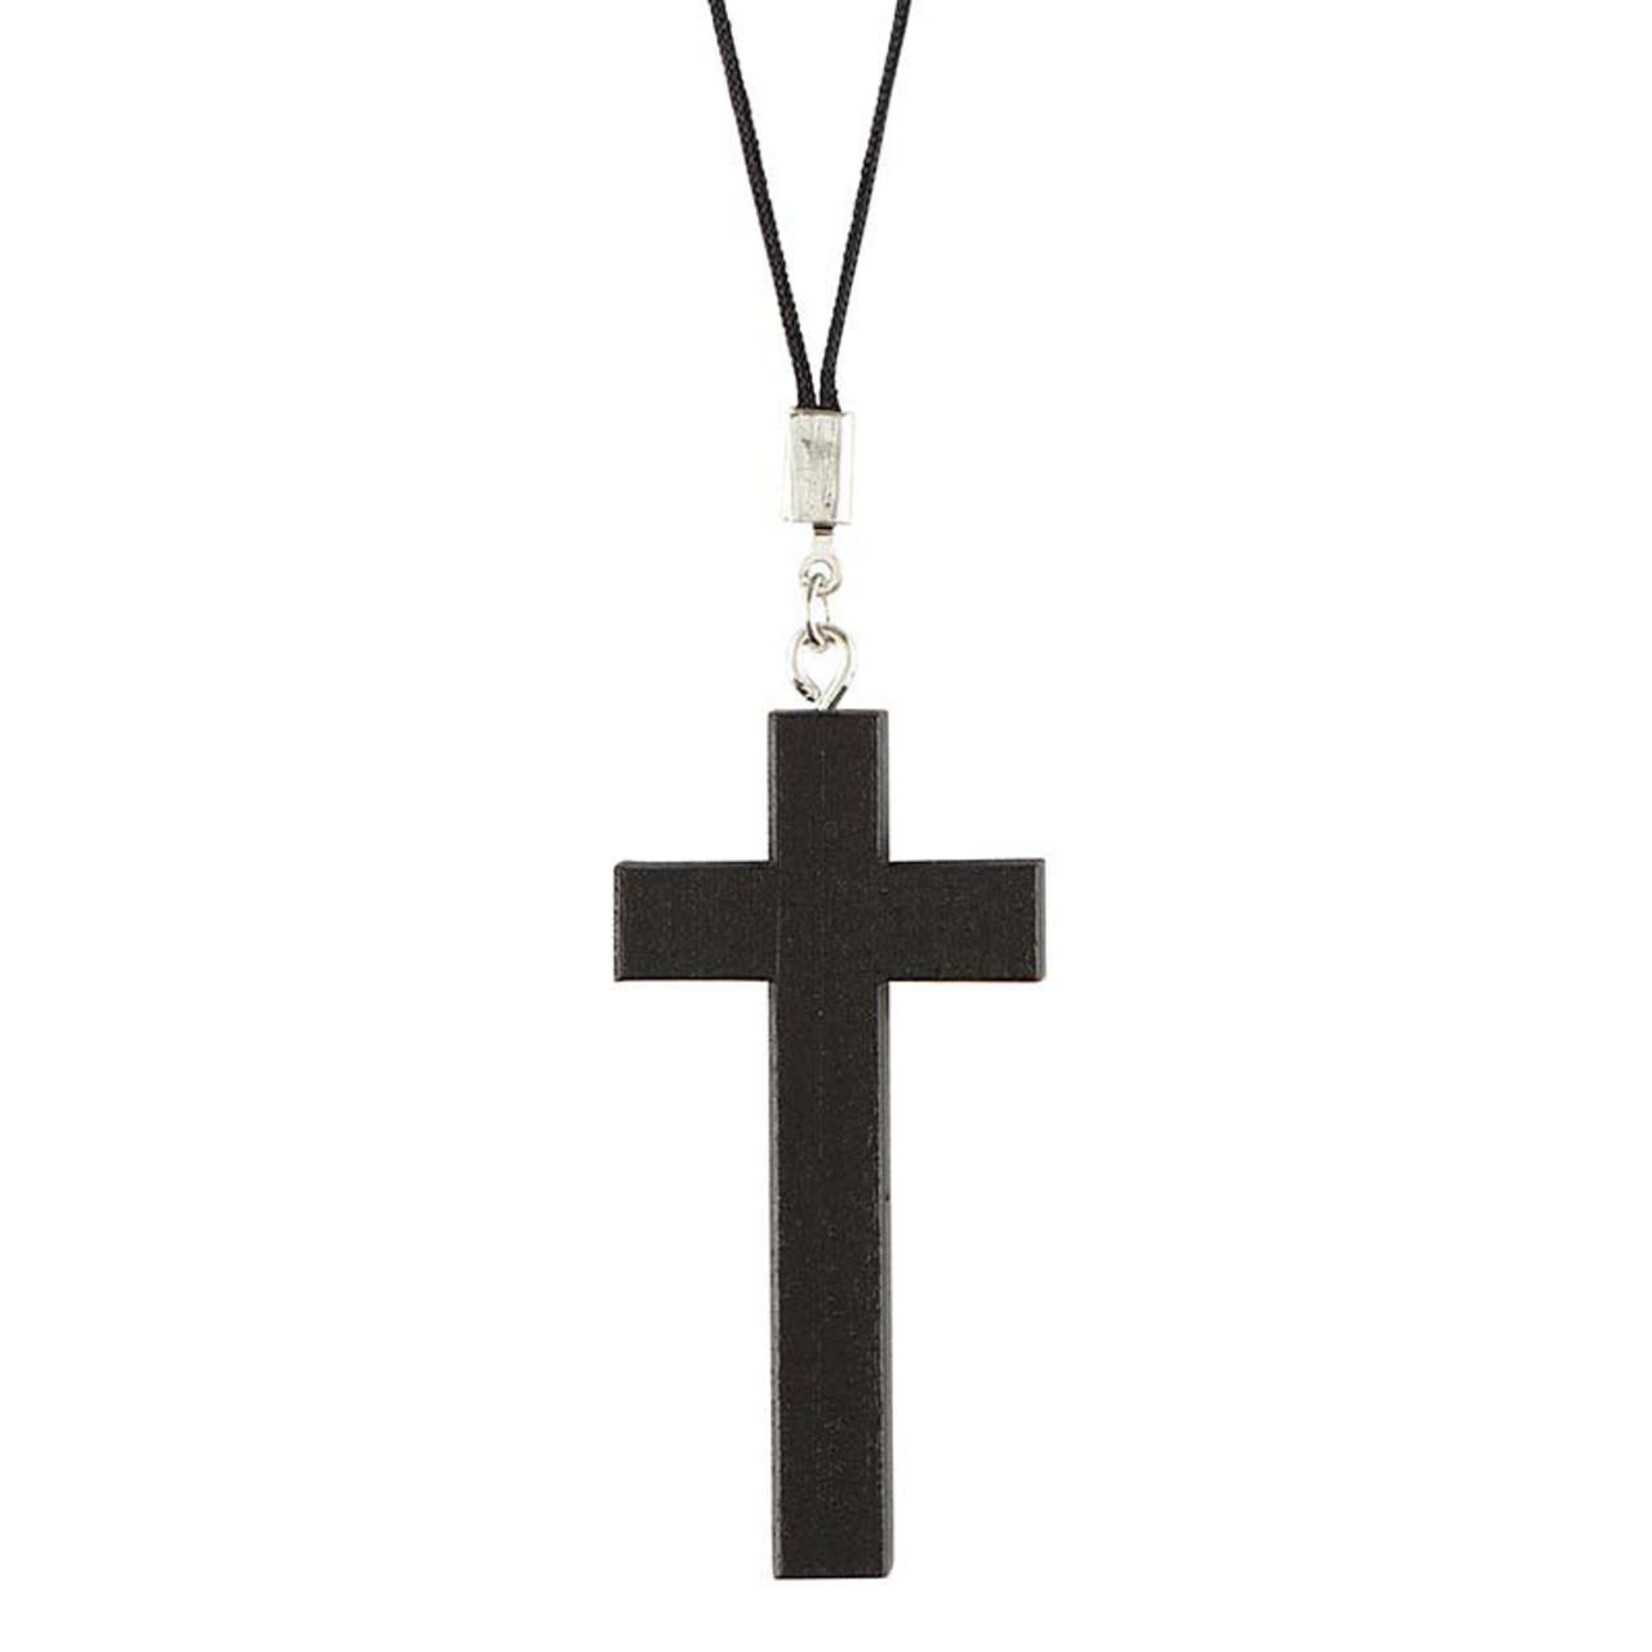 1.25" Black Wood Cross on Cord